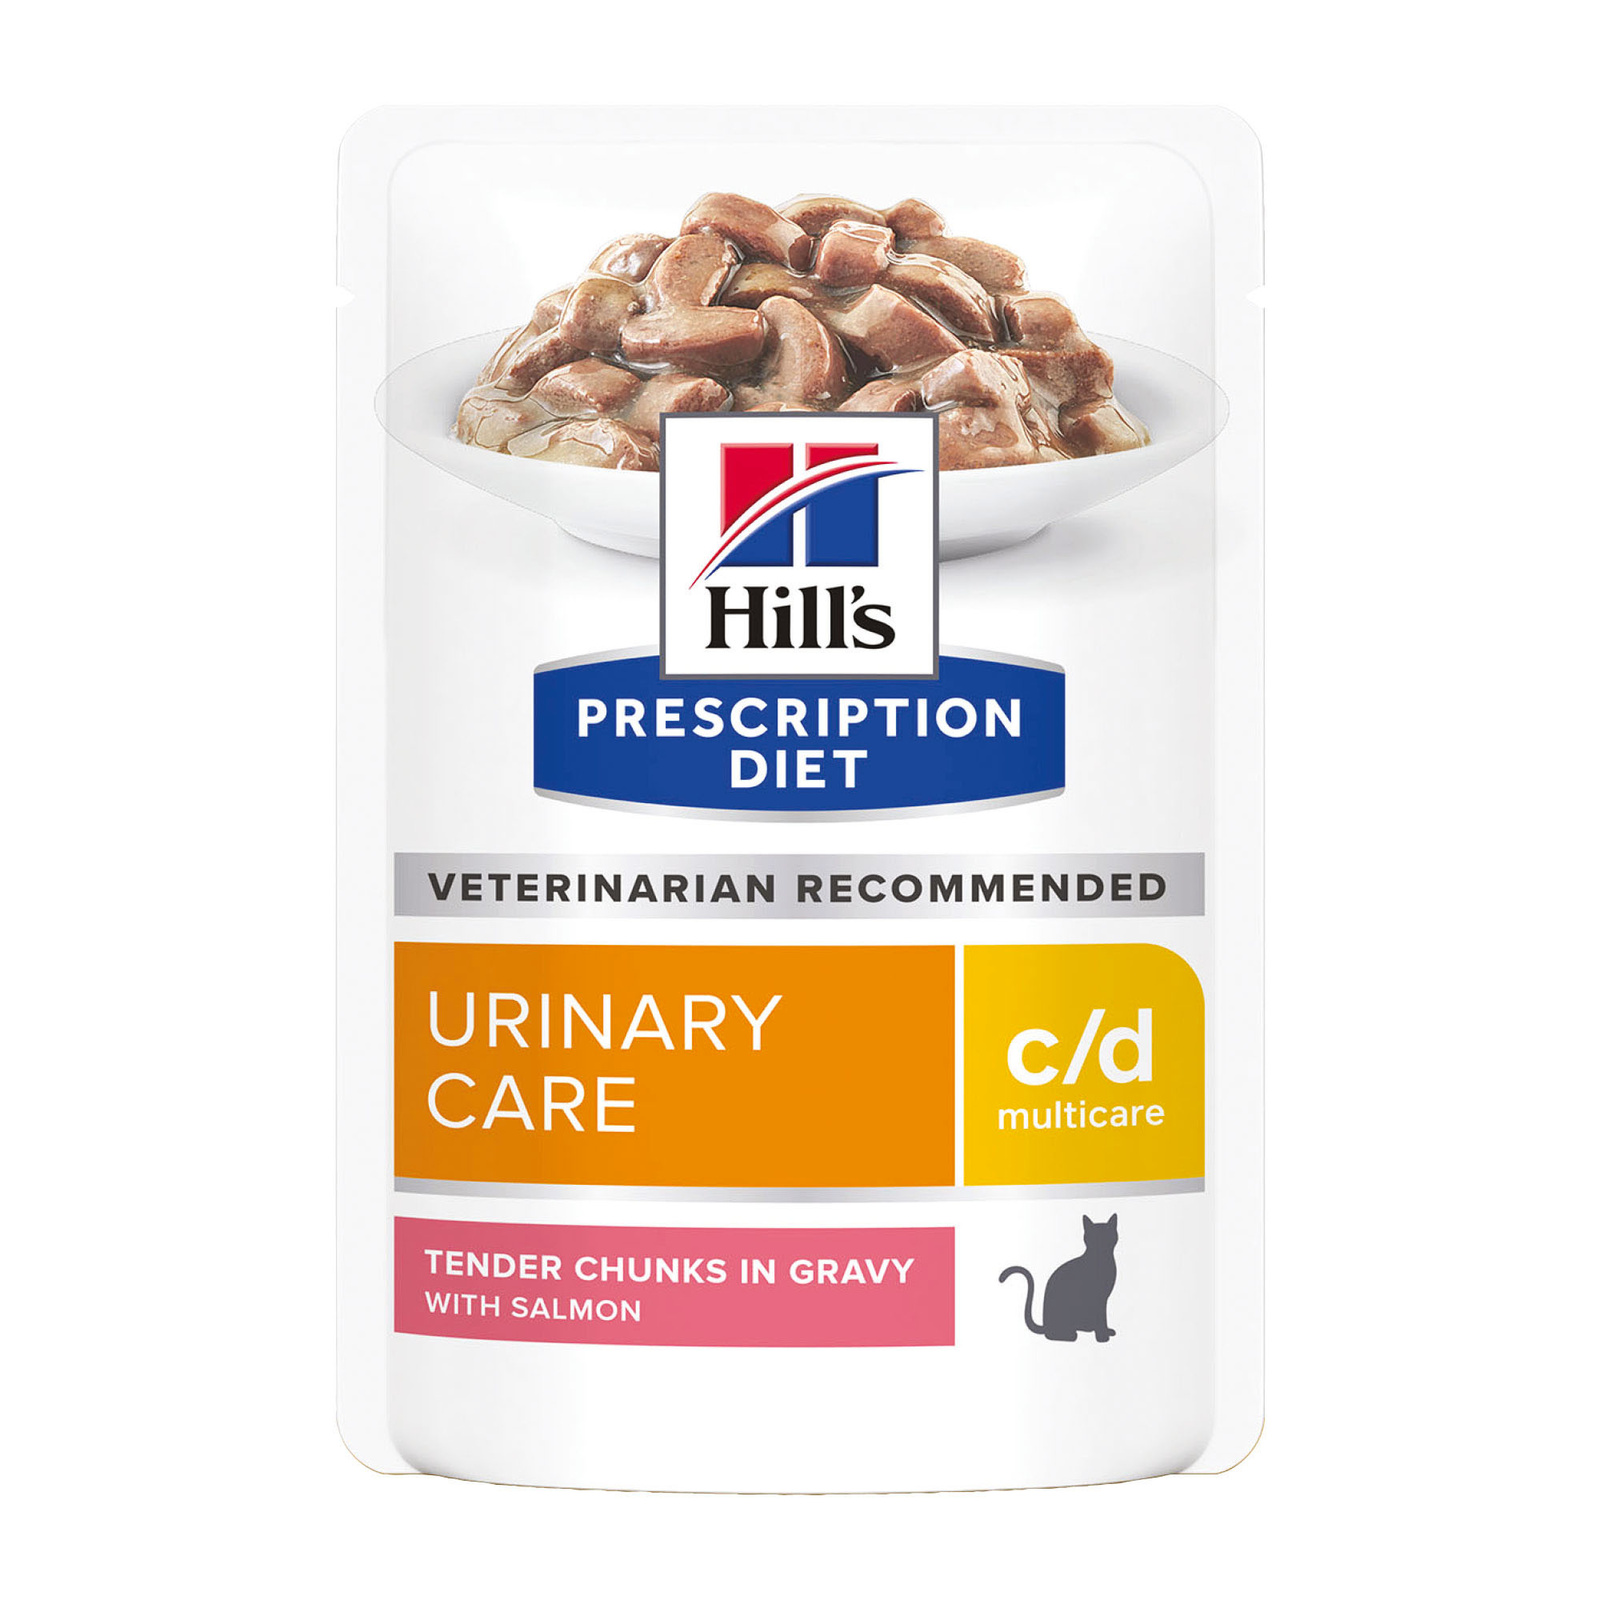 Hill's вет.консервы влажный диетический корм для кошек c/d Multicare Urinary Care при профилактике мочекаменной болезни (мкб), с лососем (85 г)